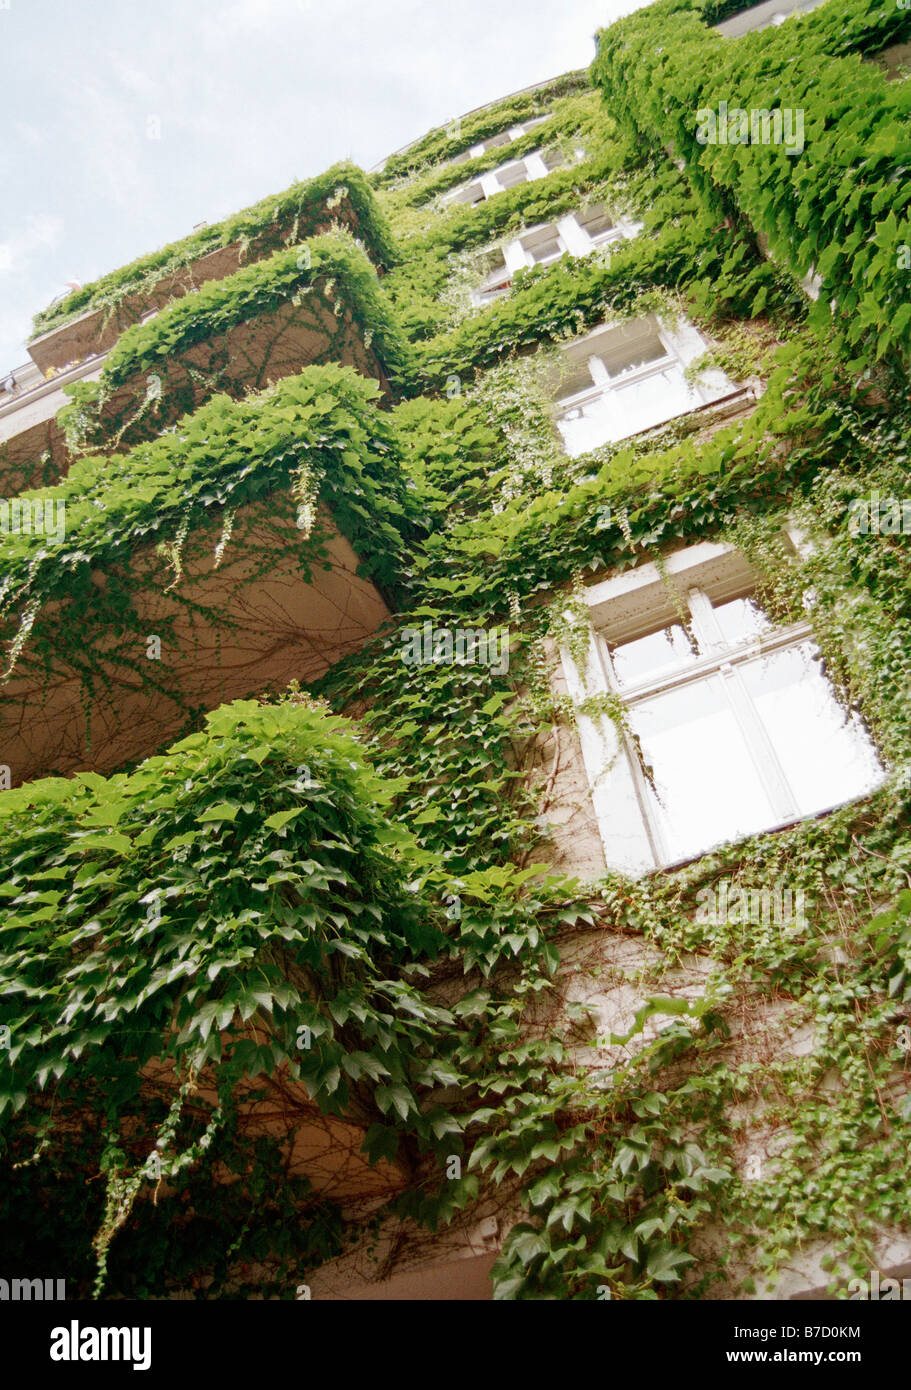 Las plantas crecen la fachada de un edificio Foto de stock